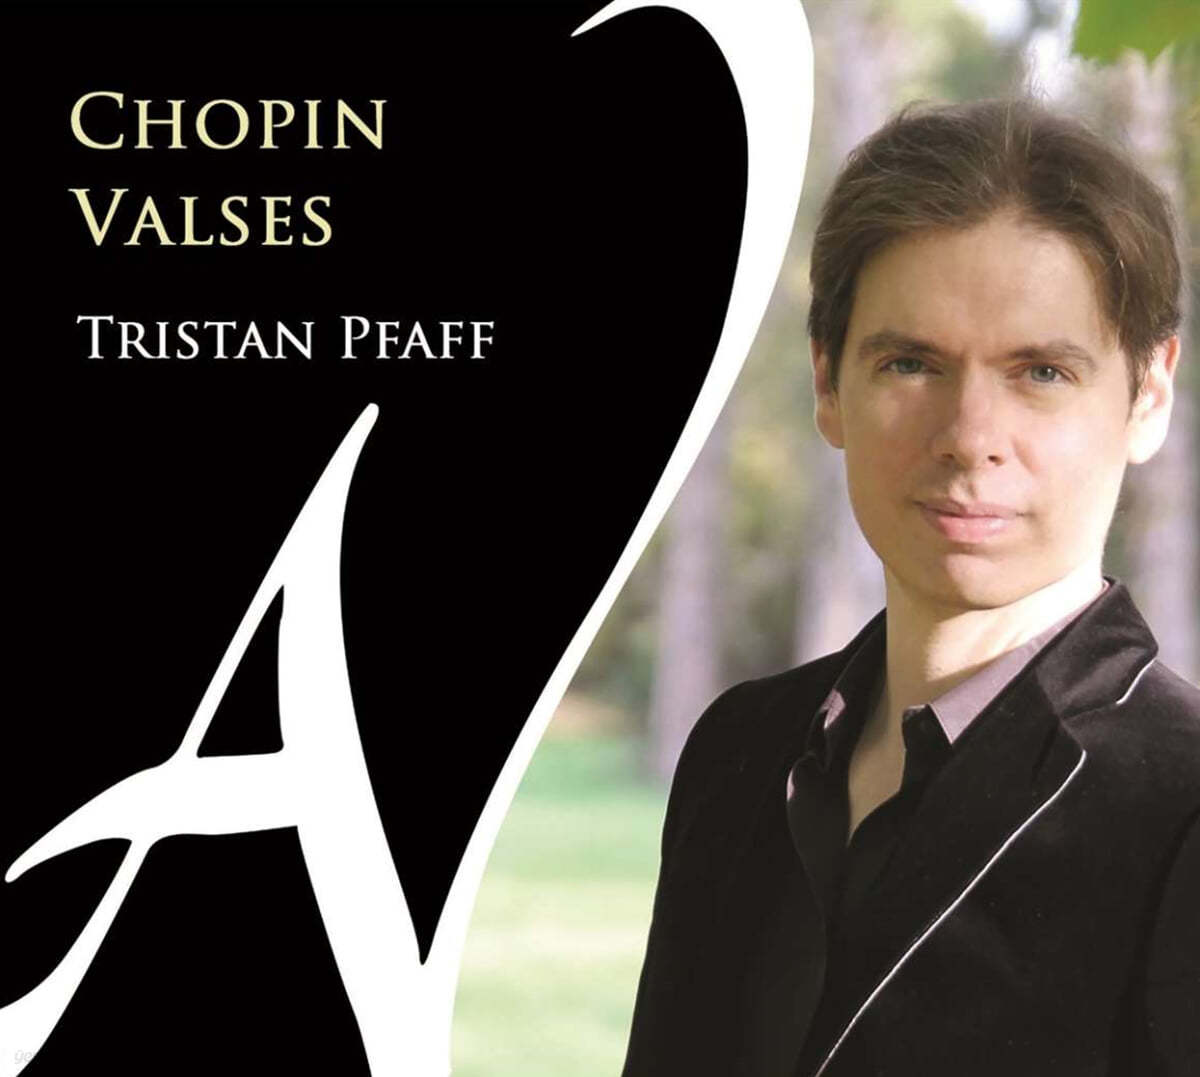 Tristan Pfaff 쇼팽: 왈츠 (Chopin: Waltzs)